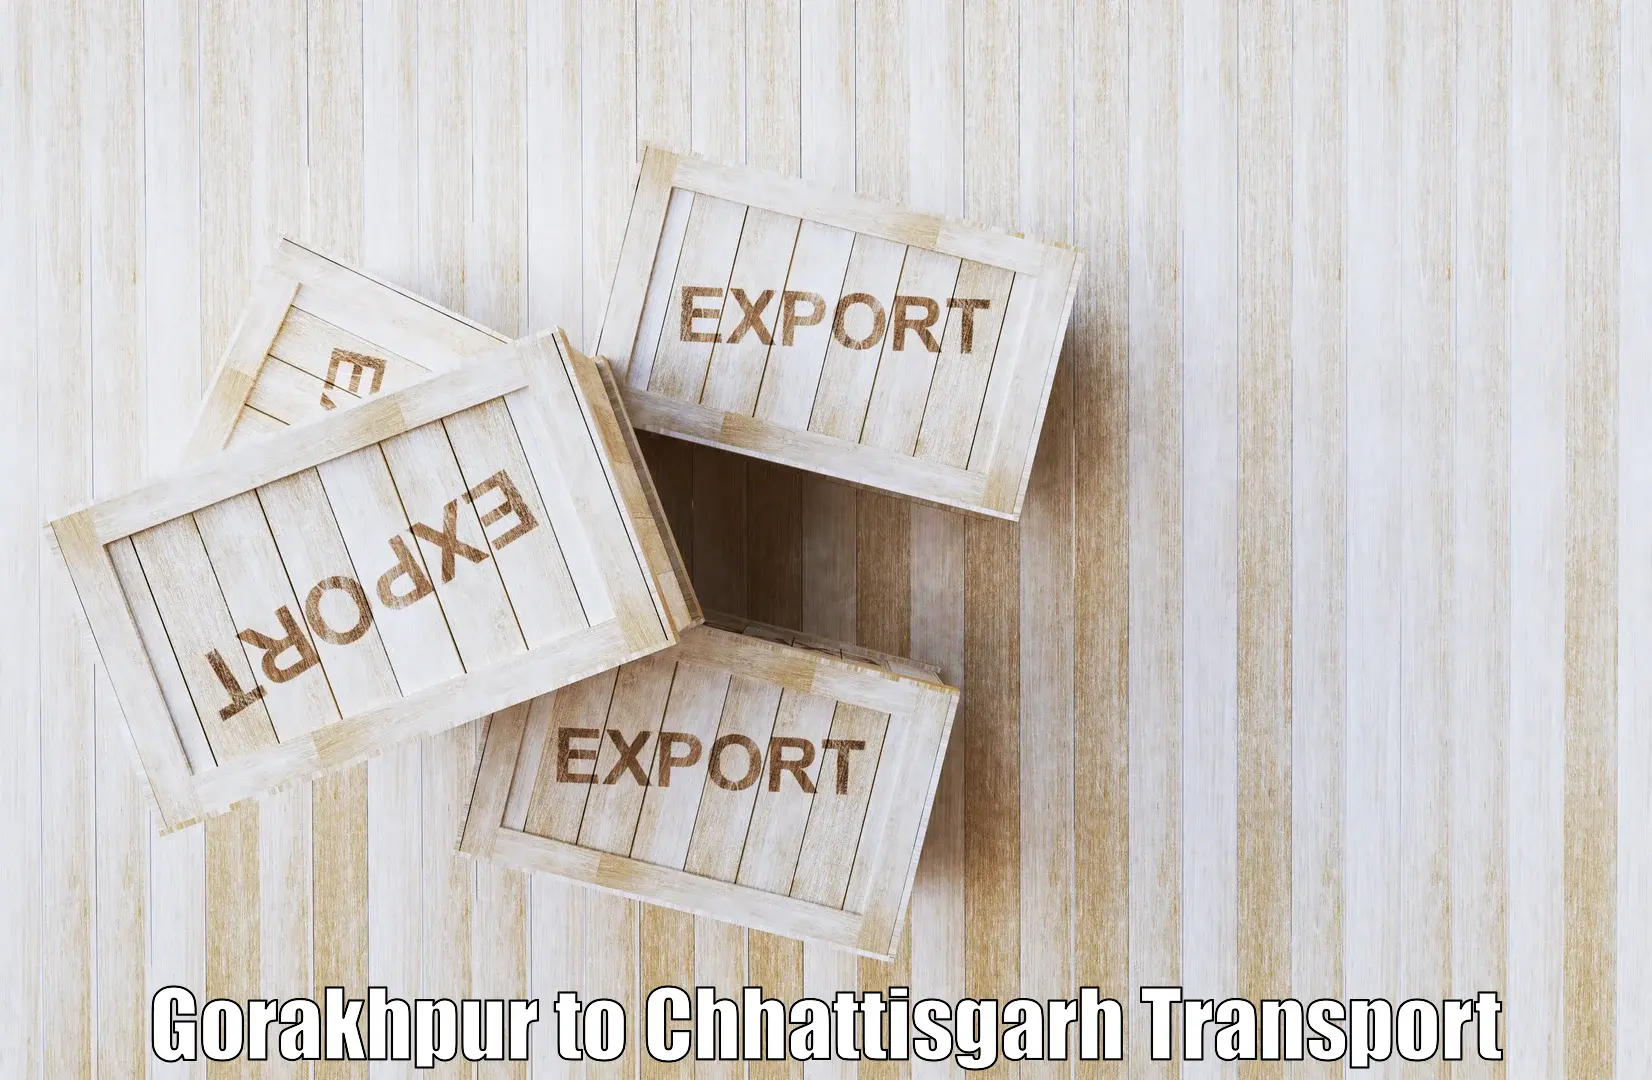 Logistics transportation services Gorakhpur to Patna Chhattisgarh